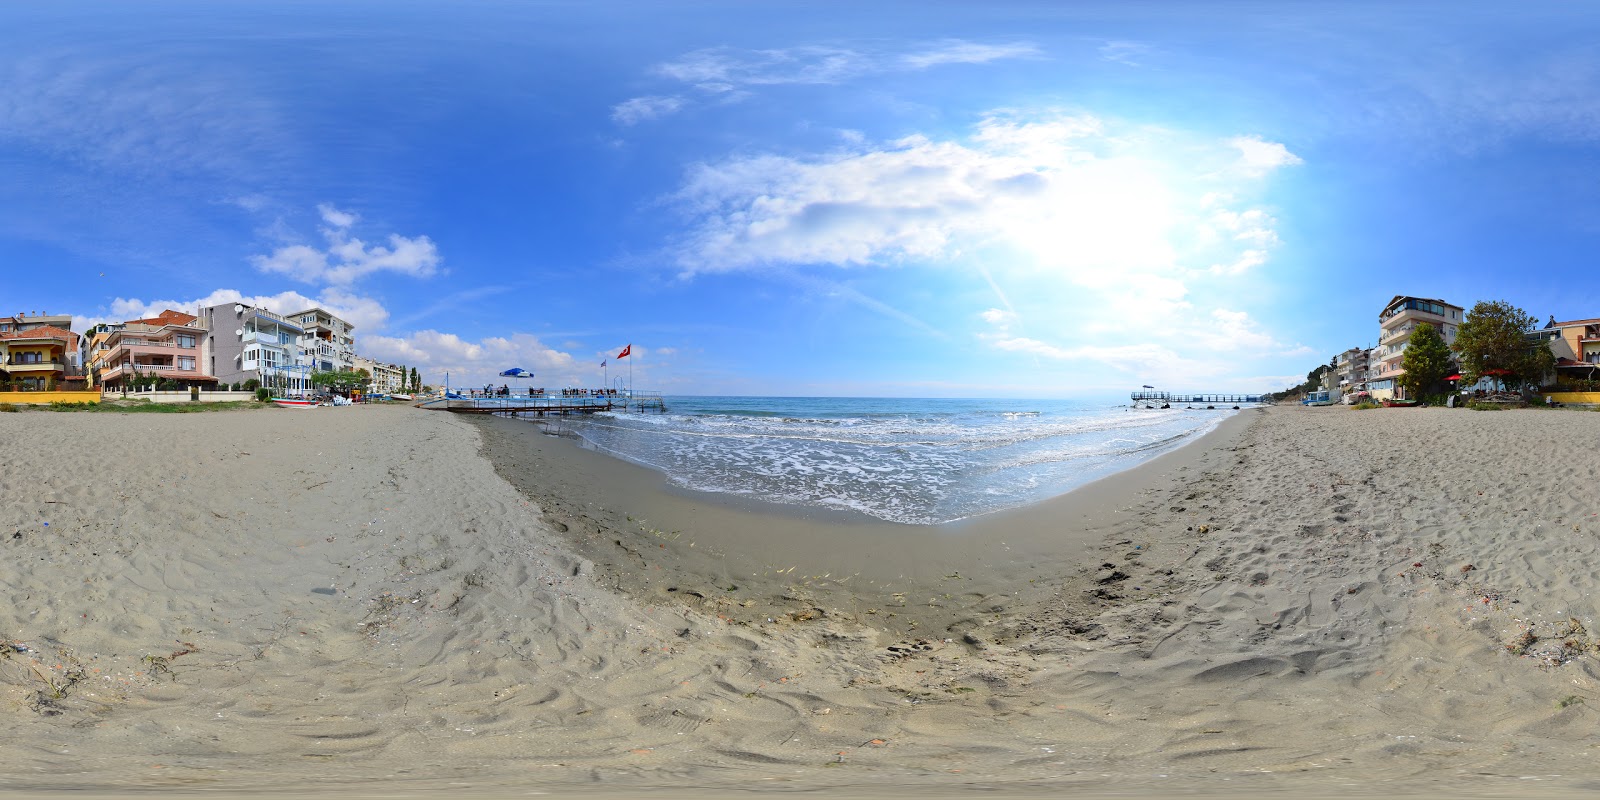 Foto de Altinova beach - lugar popular entre os apreciadores de relaxamento